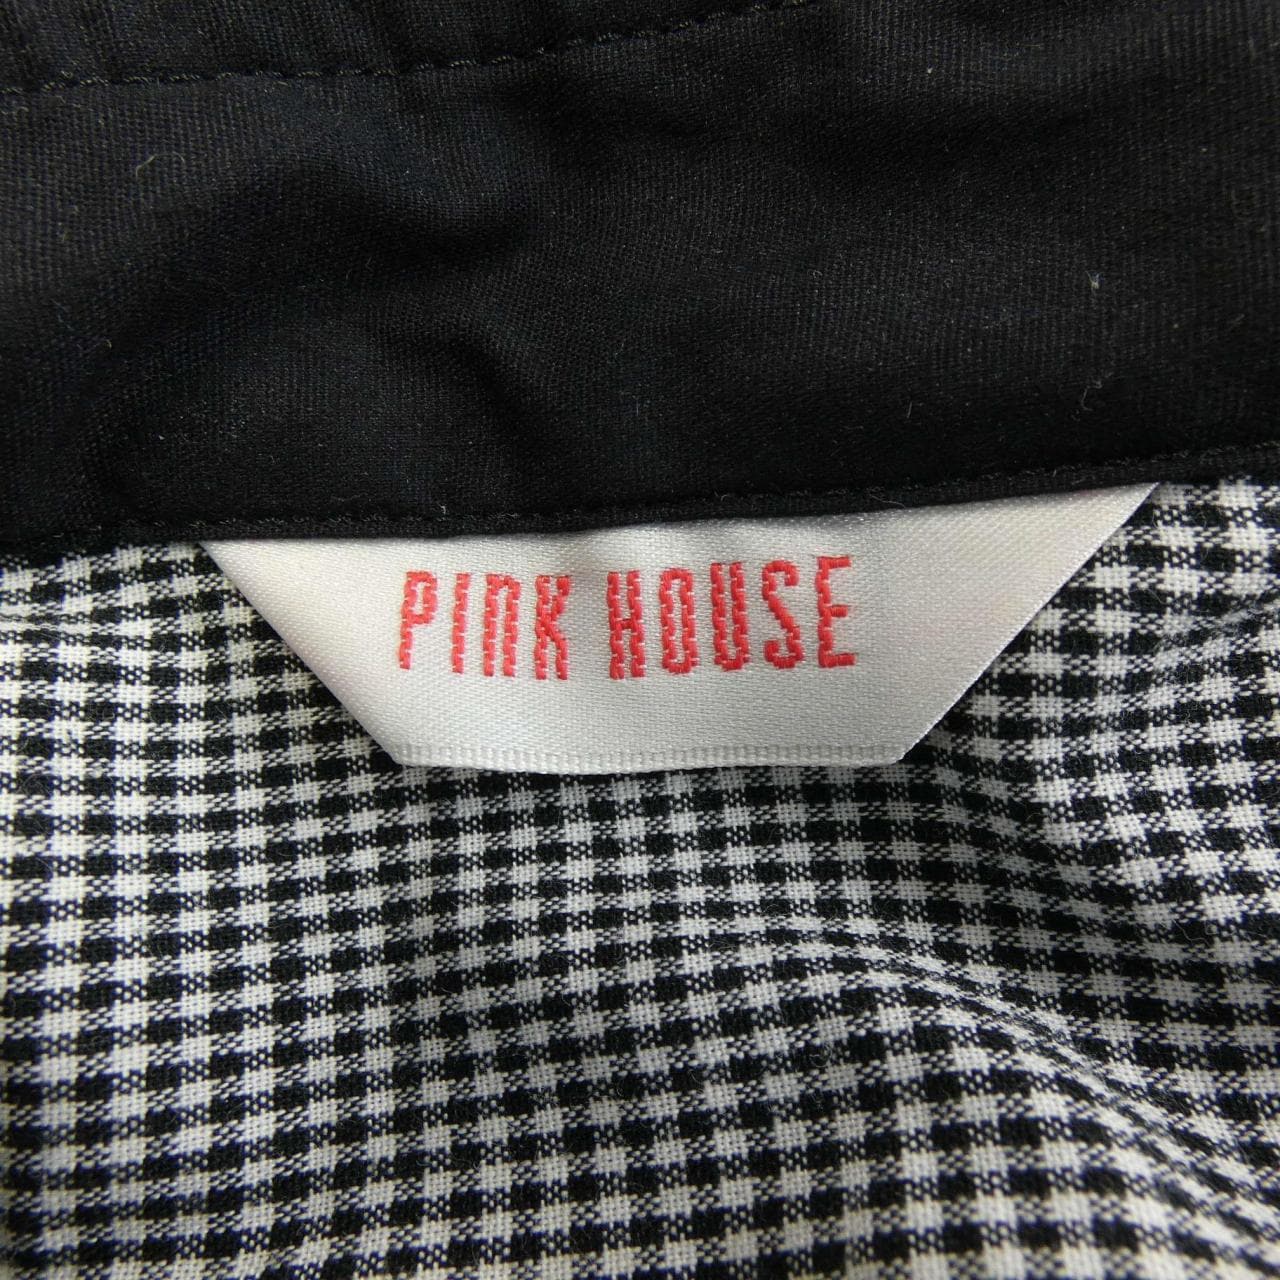 粉屋PINK HOUSE衬衫